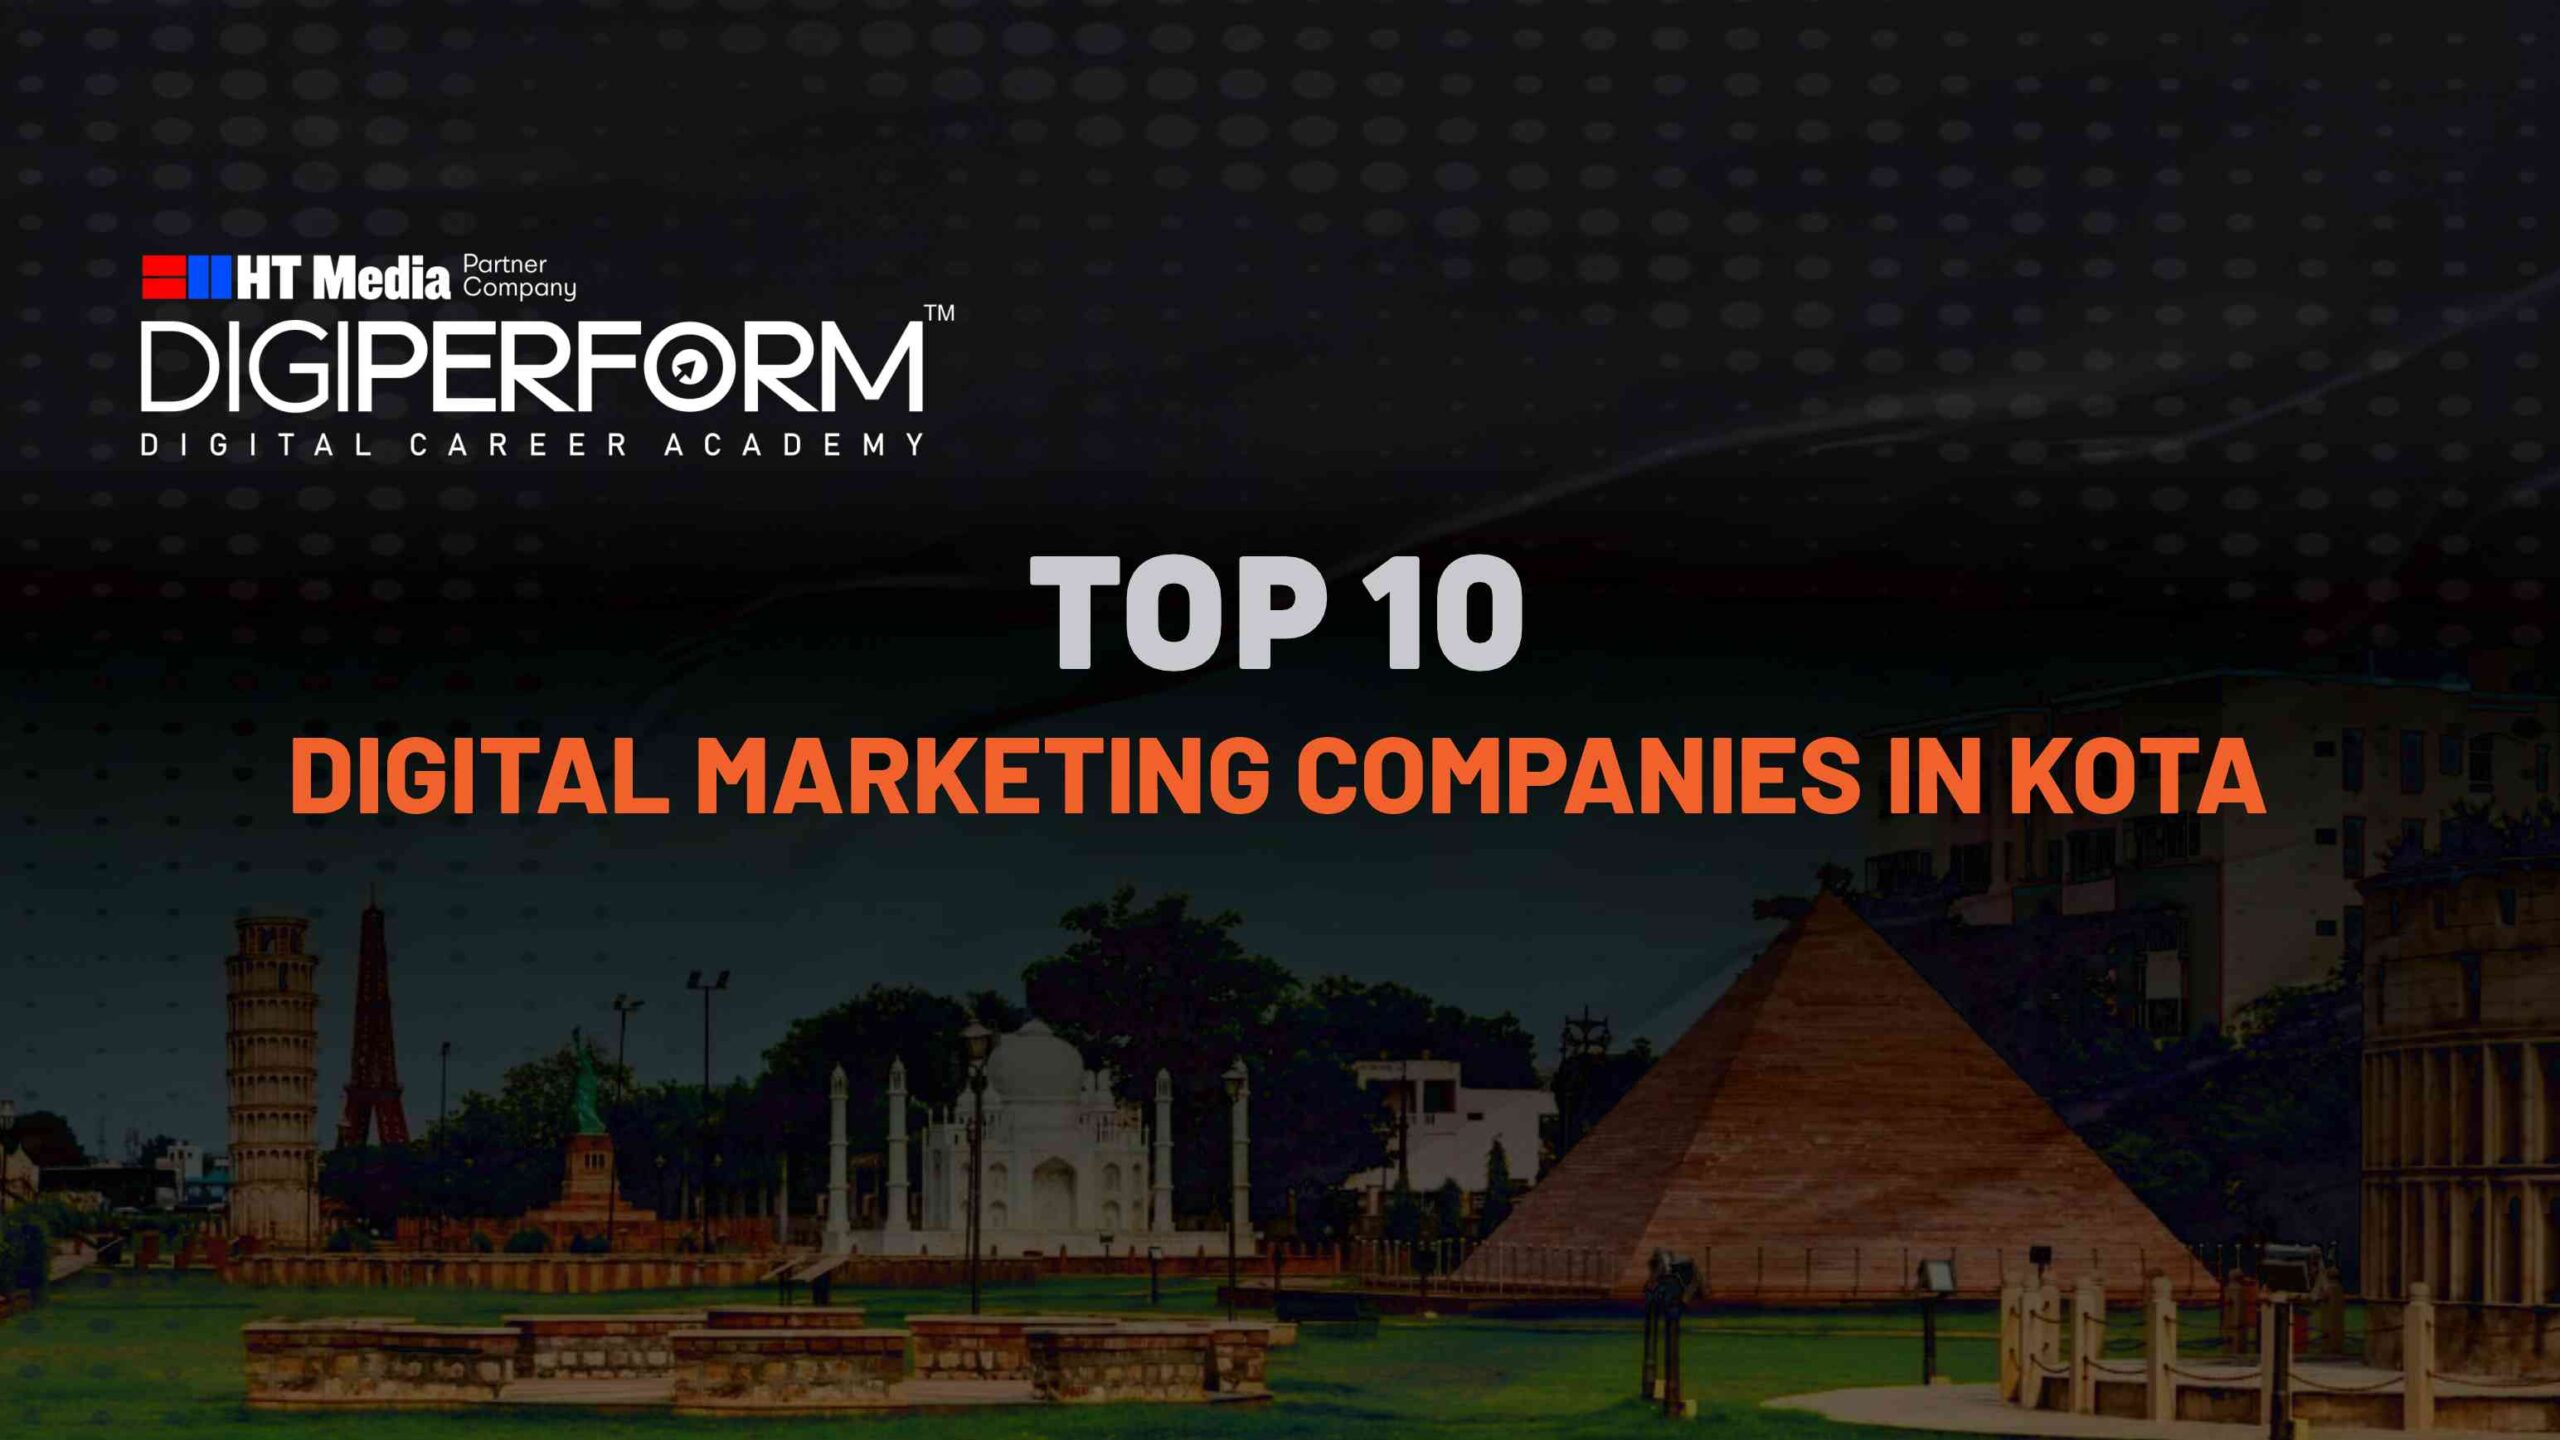 Top 10 Digital Marketing Companies In Kota